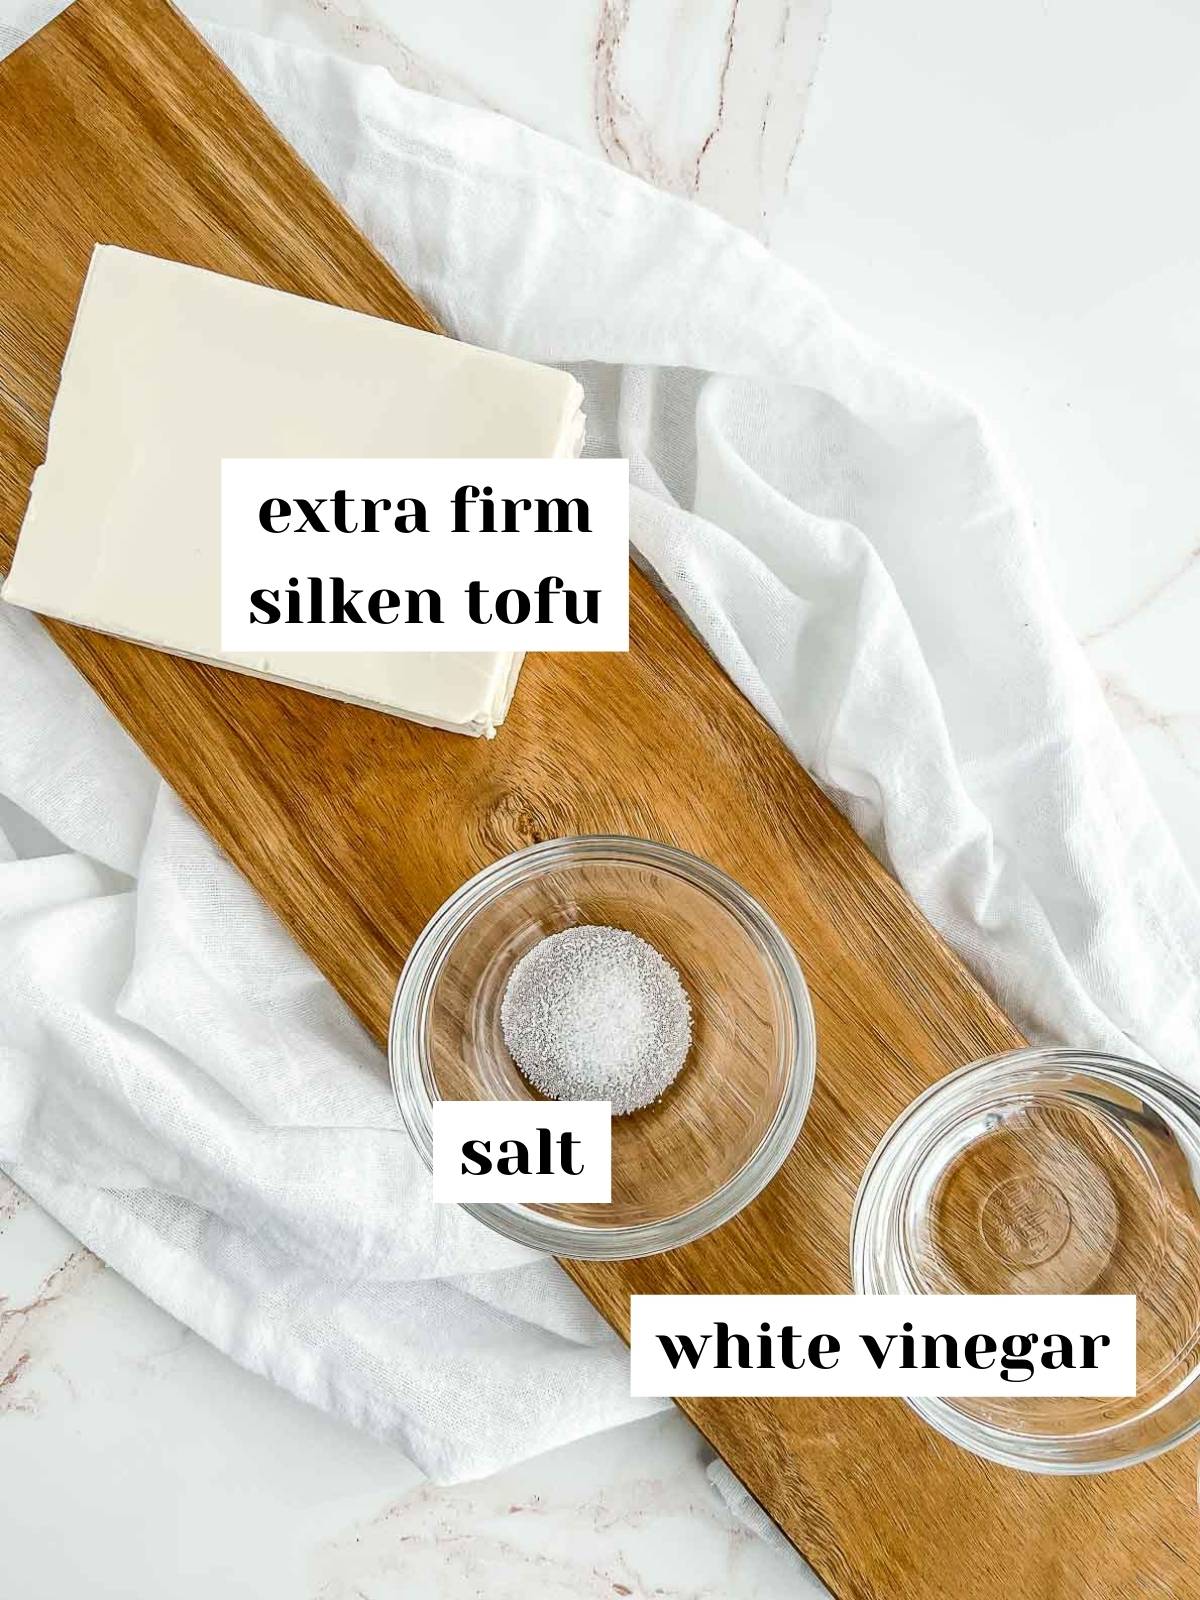 labeled ingredients including tofu, salt, and vinegar on a wood server